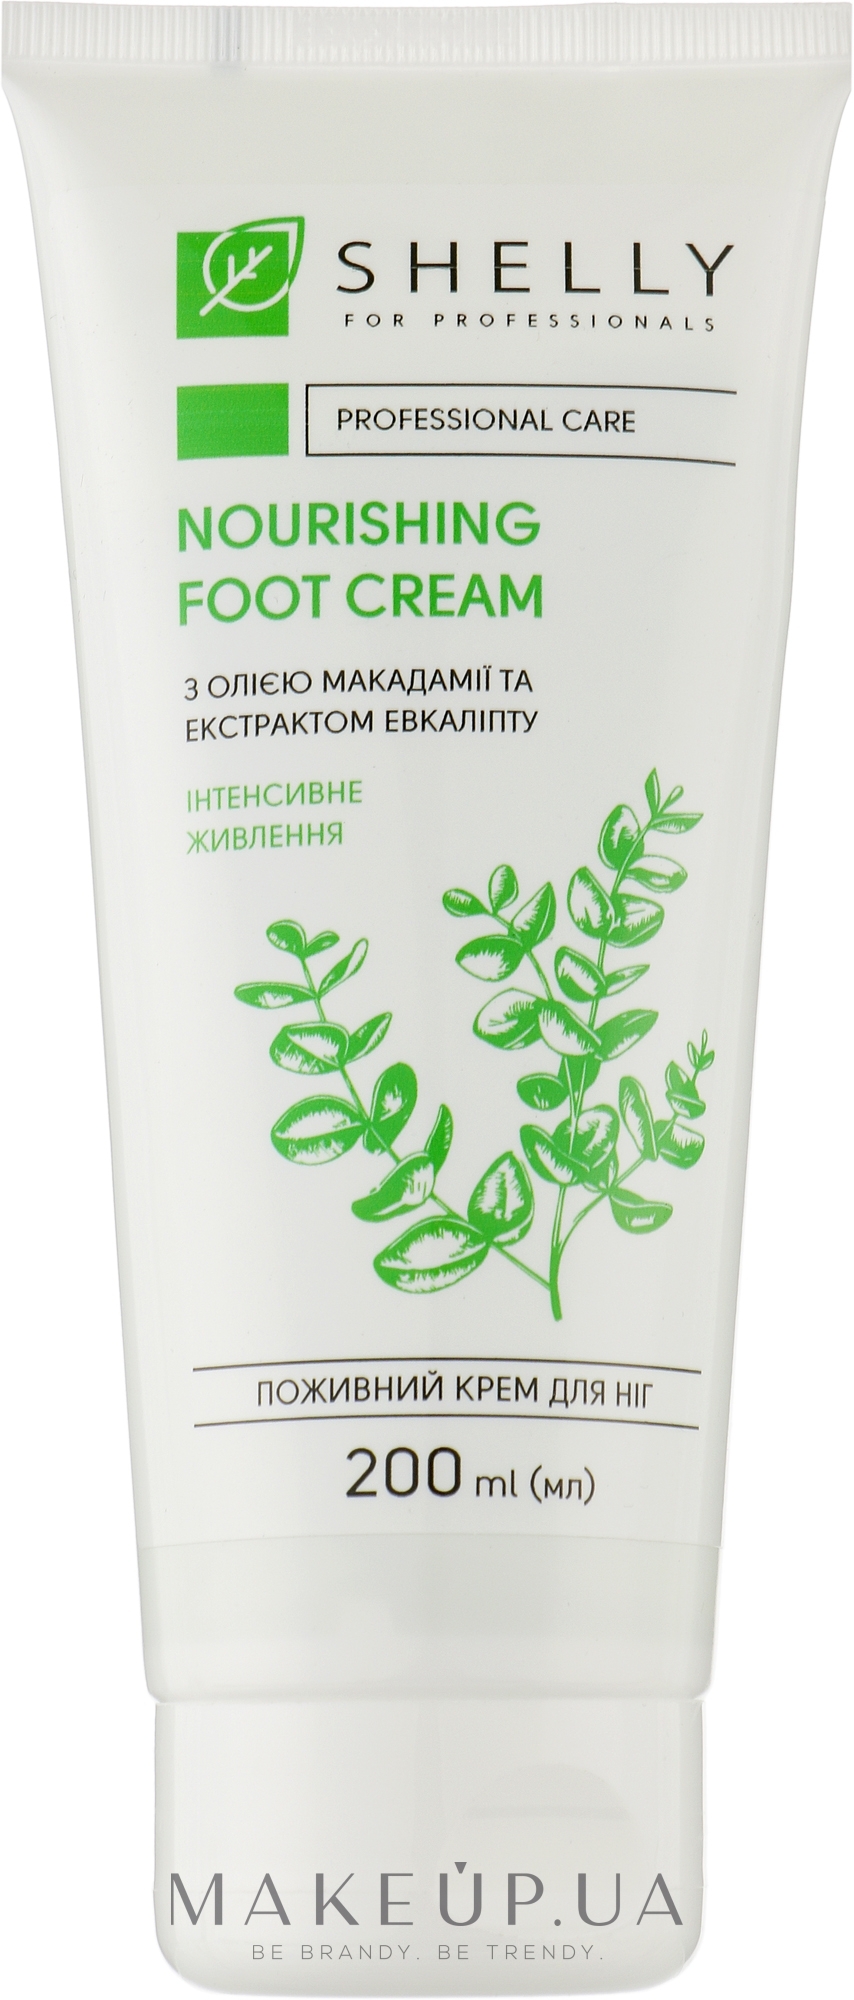 Живильний крем для ніг з олією макадамії та екстрактом евкаліпта - Shelly Nourishing Foot Cream — фото 200ml